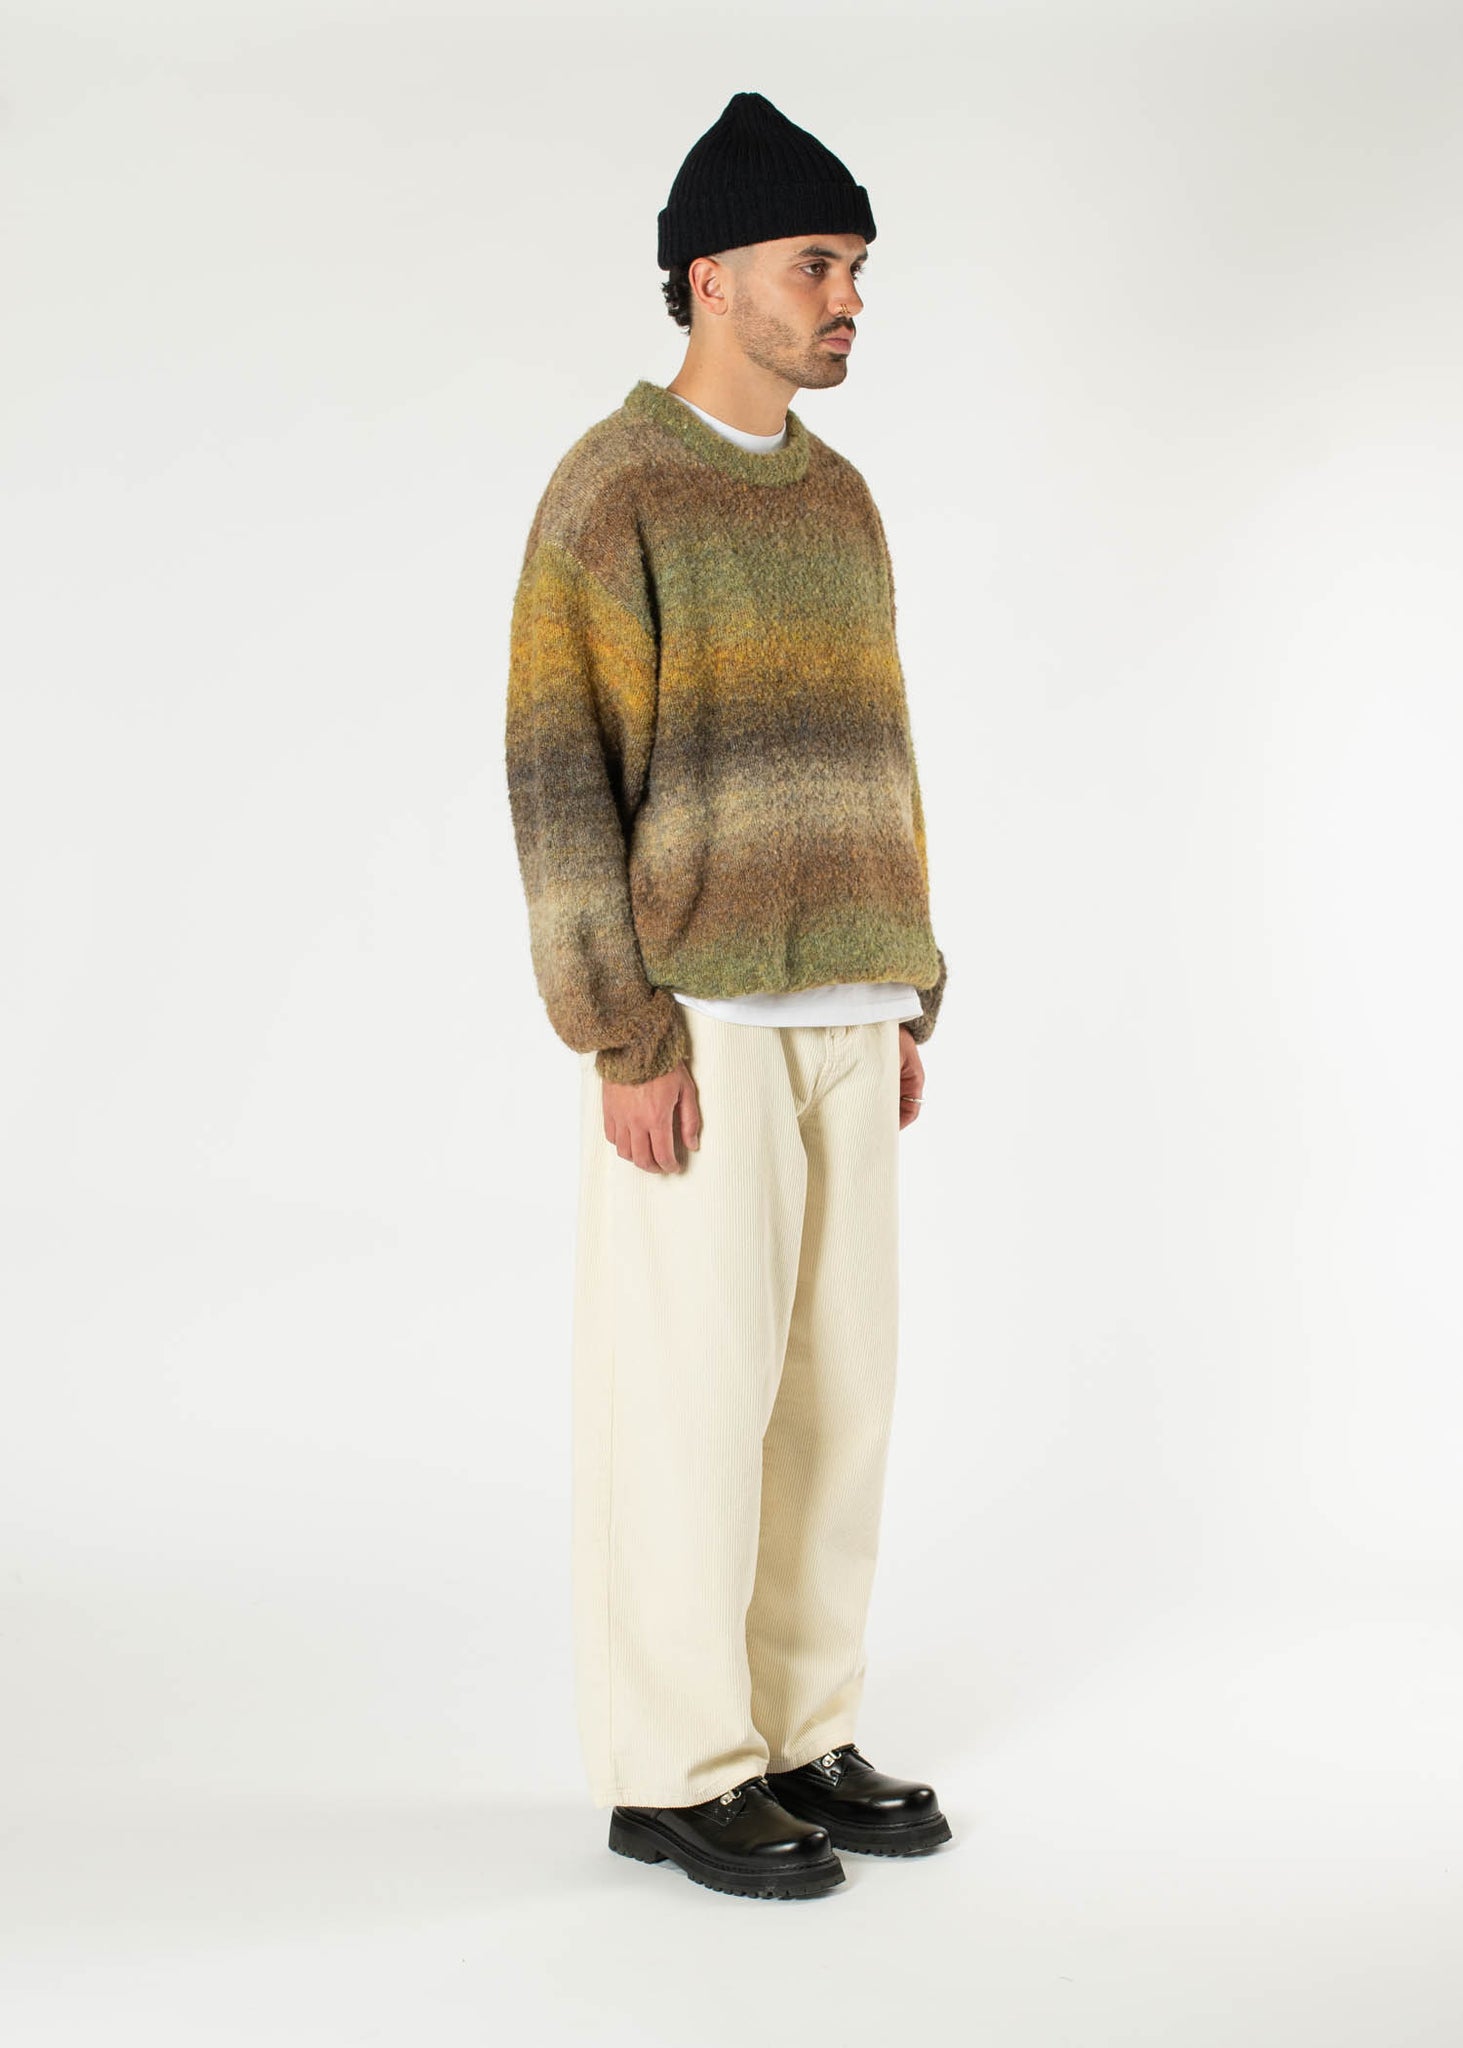 Stripe Wool Sweater